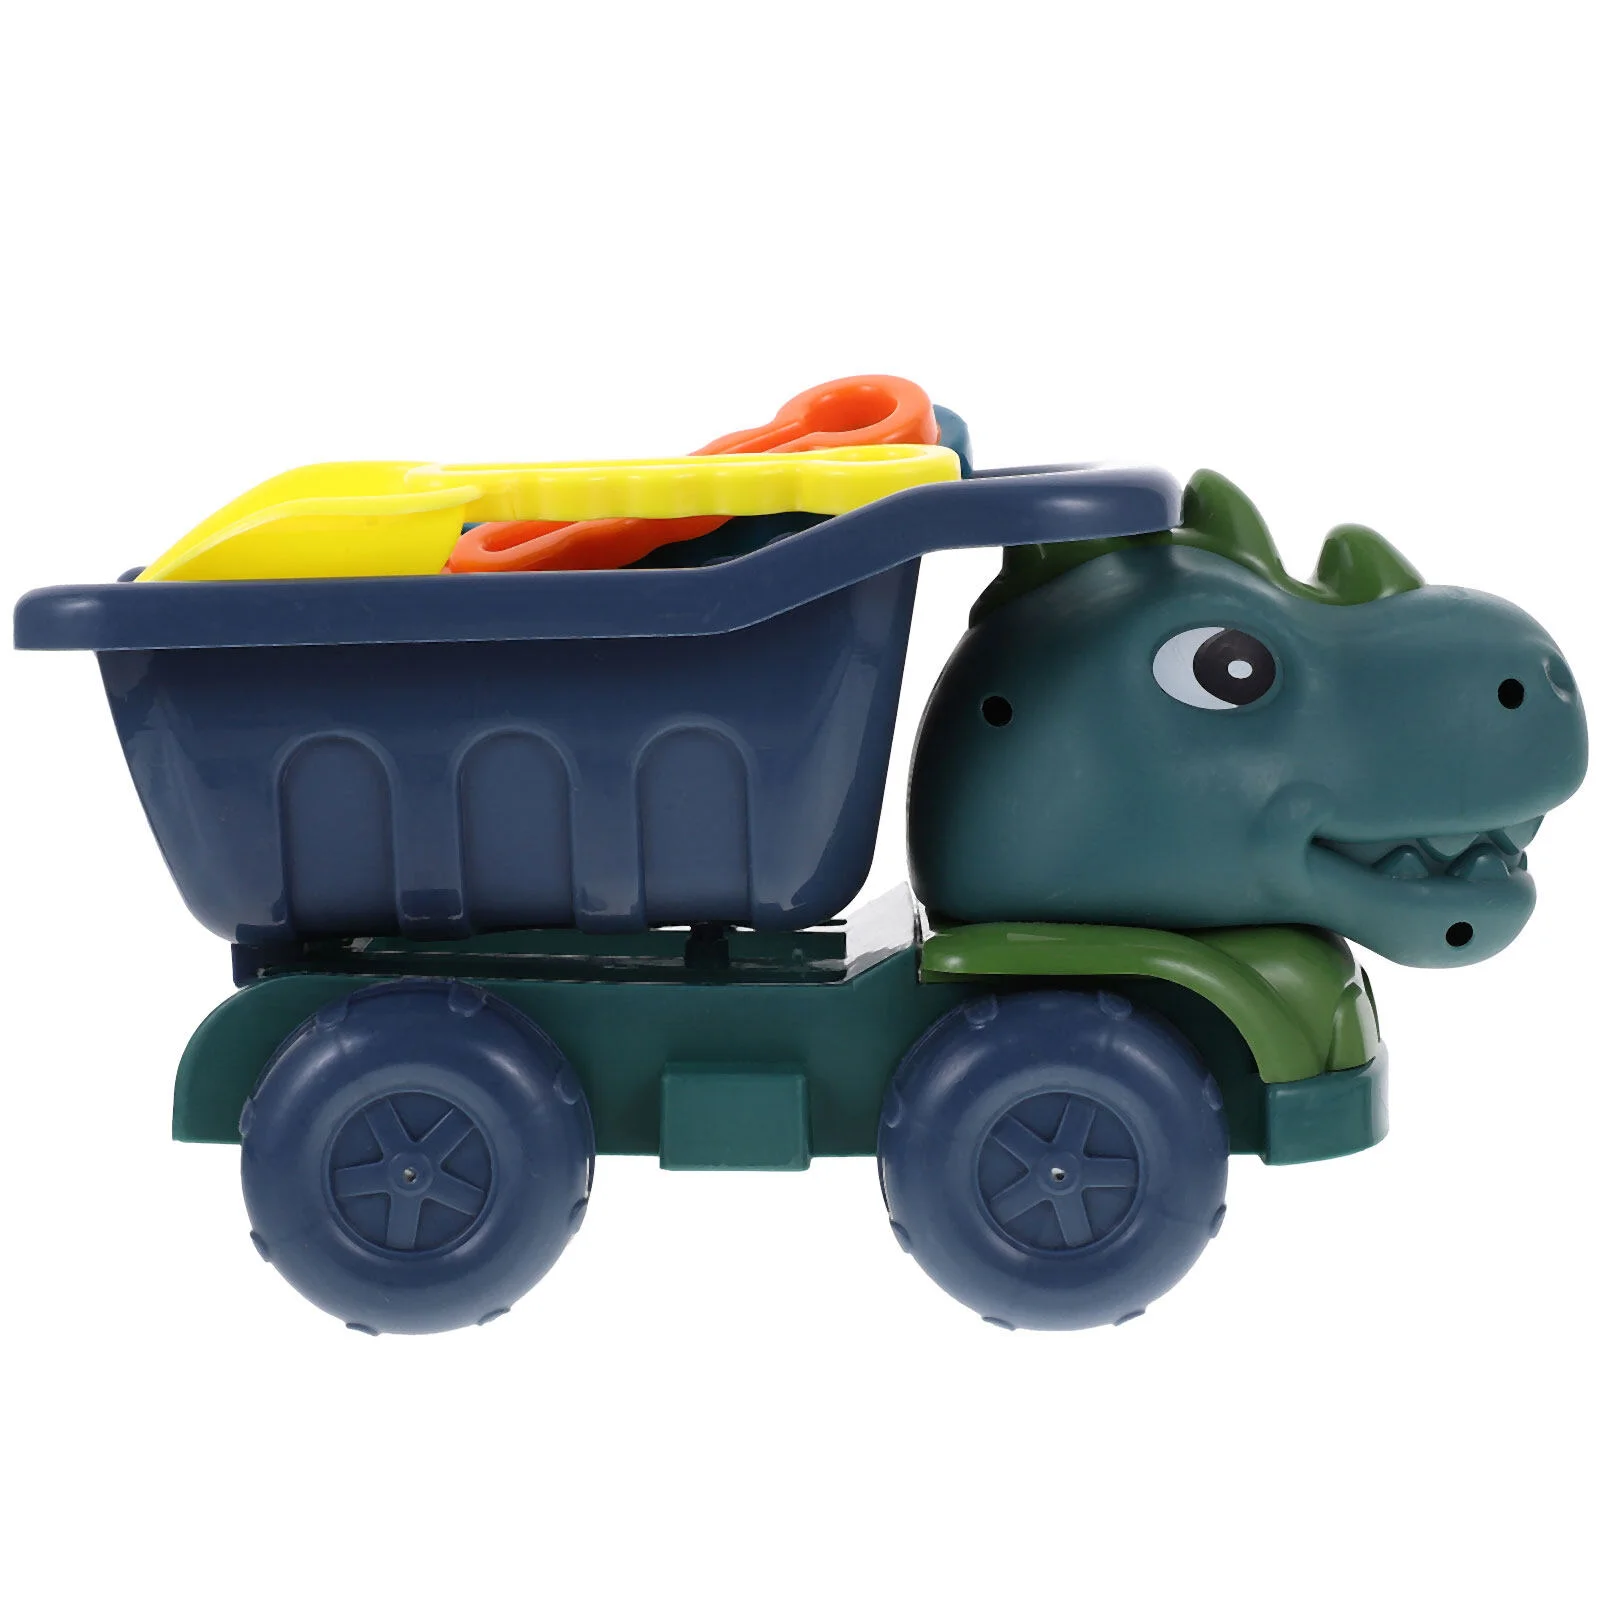 

Игрушечный динозавр, инженерный грузовик, игрушка для детей, песок, игрушки для игр на открытом воздухе, пляж